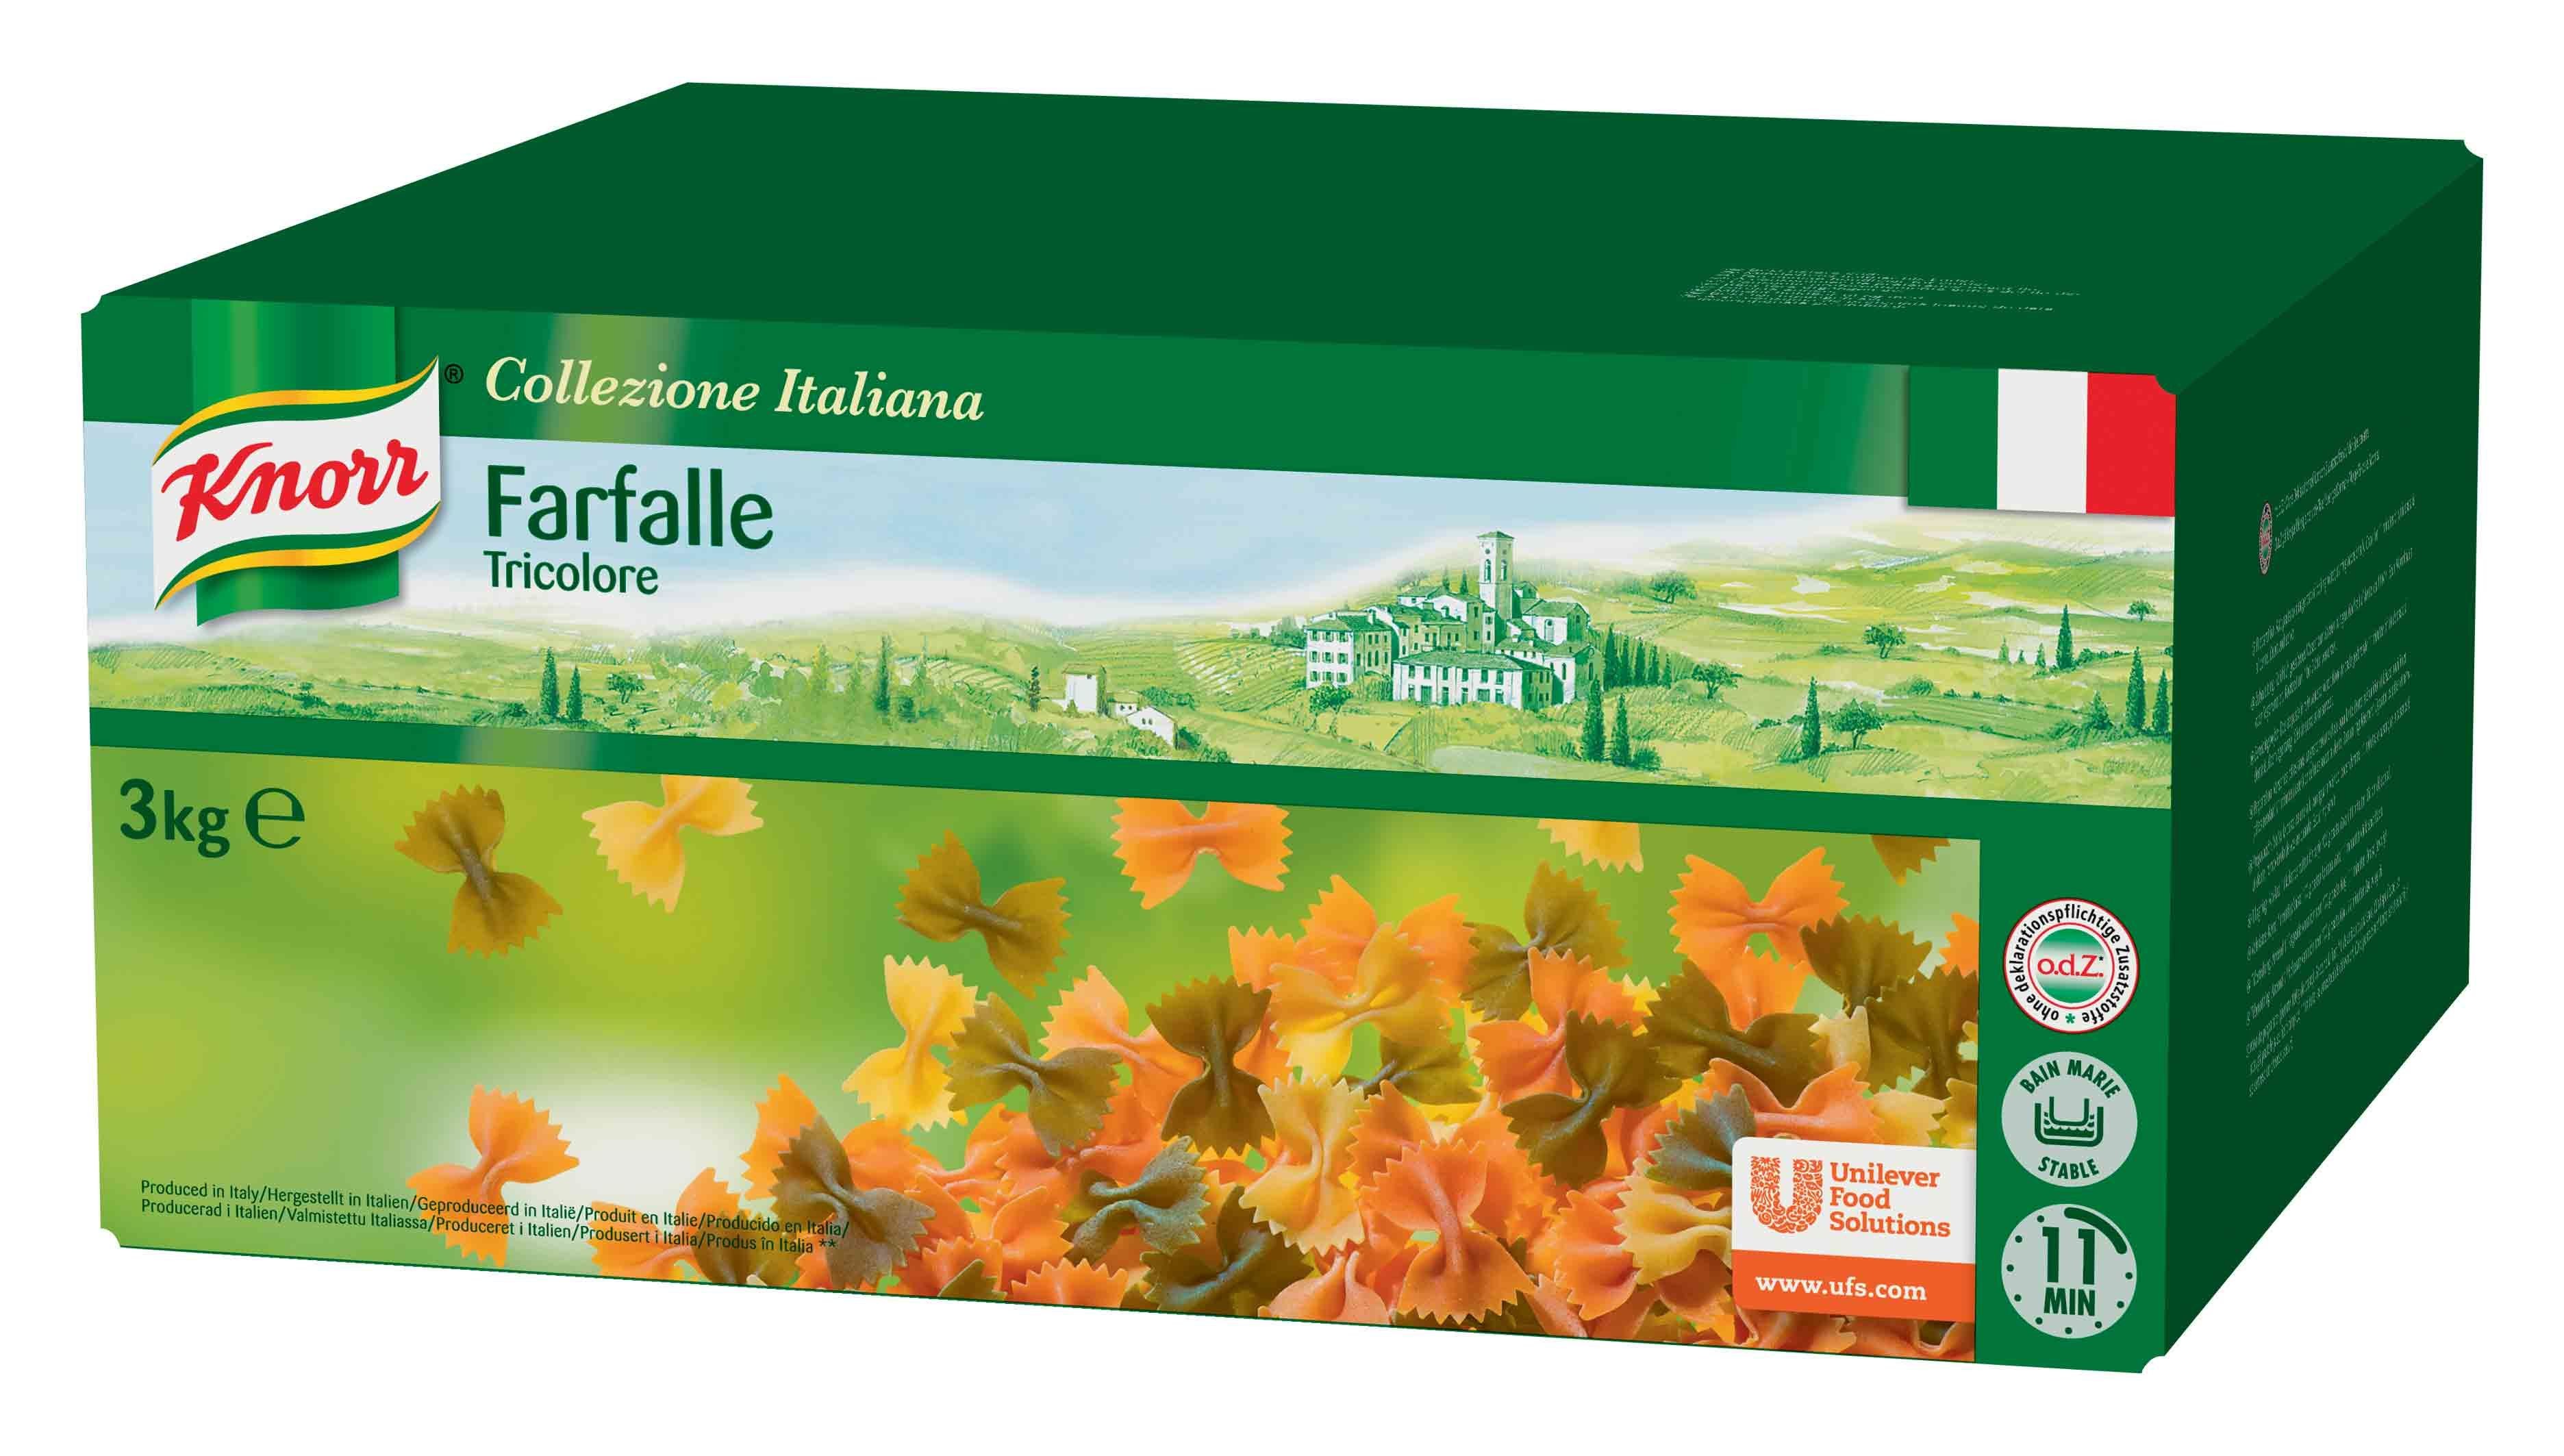 Knorr pates Farfalle tricolore 3kg Collezione Italiana